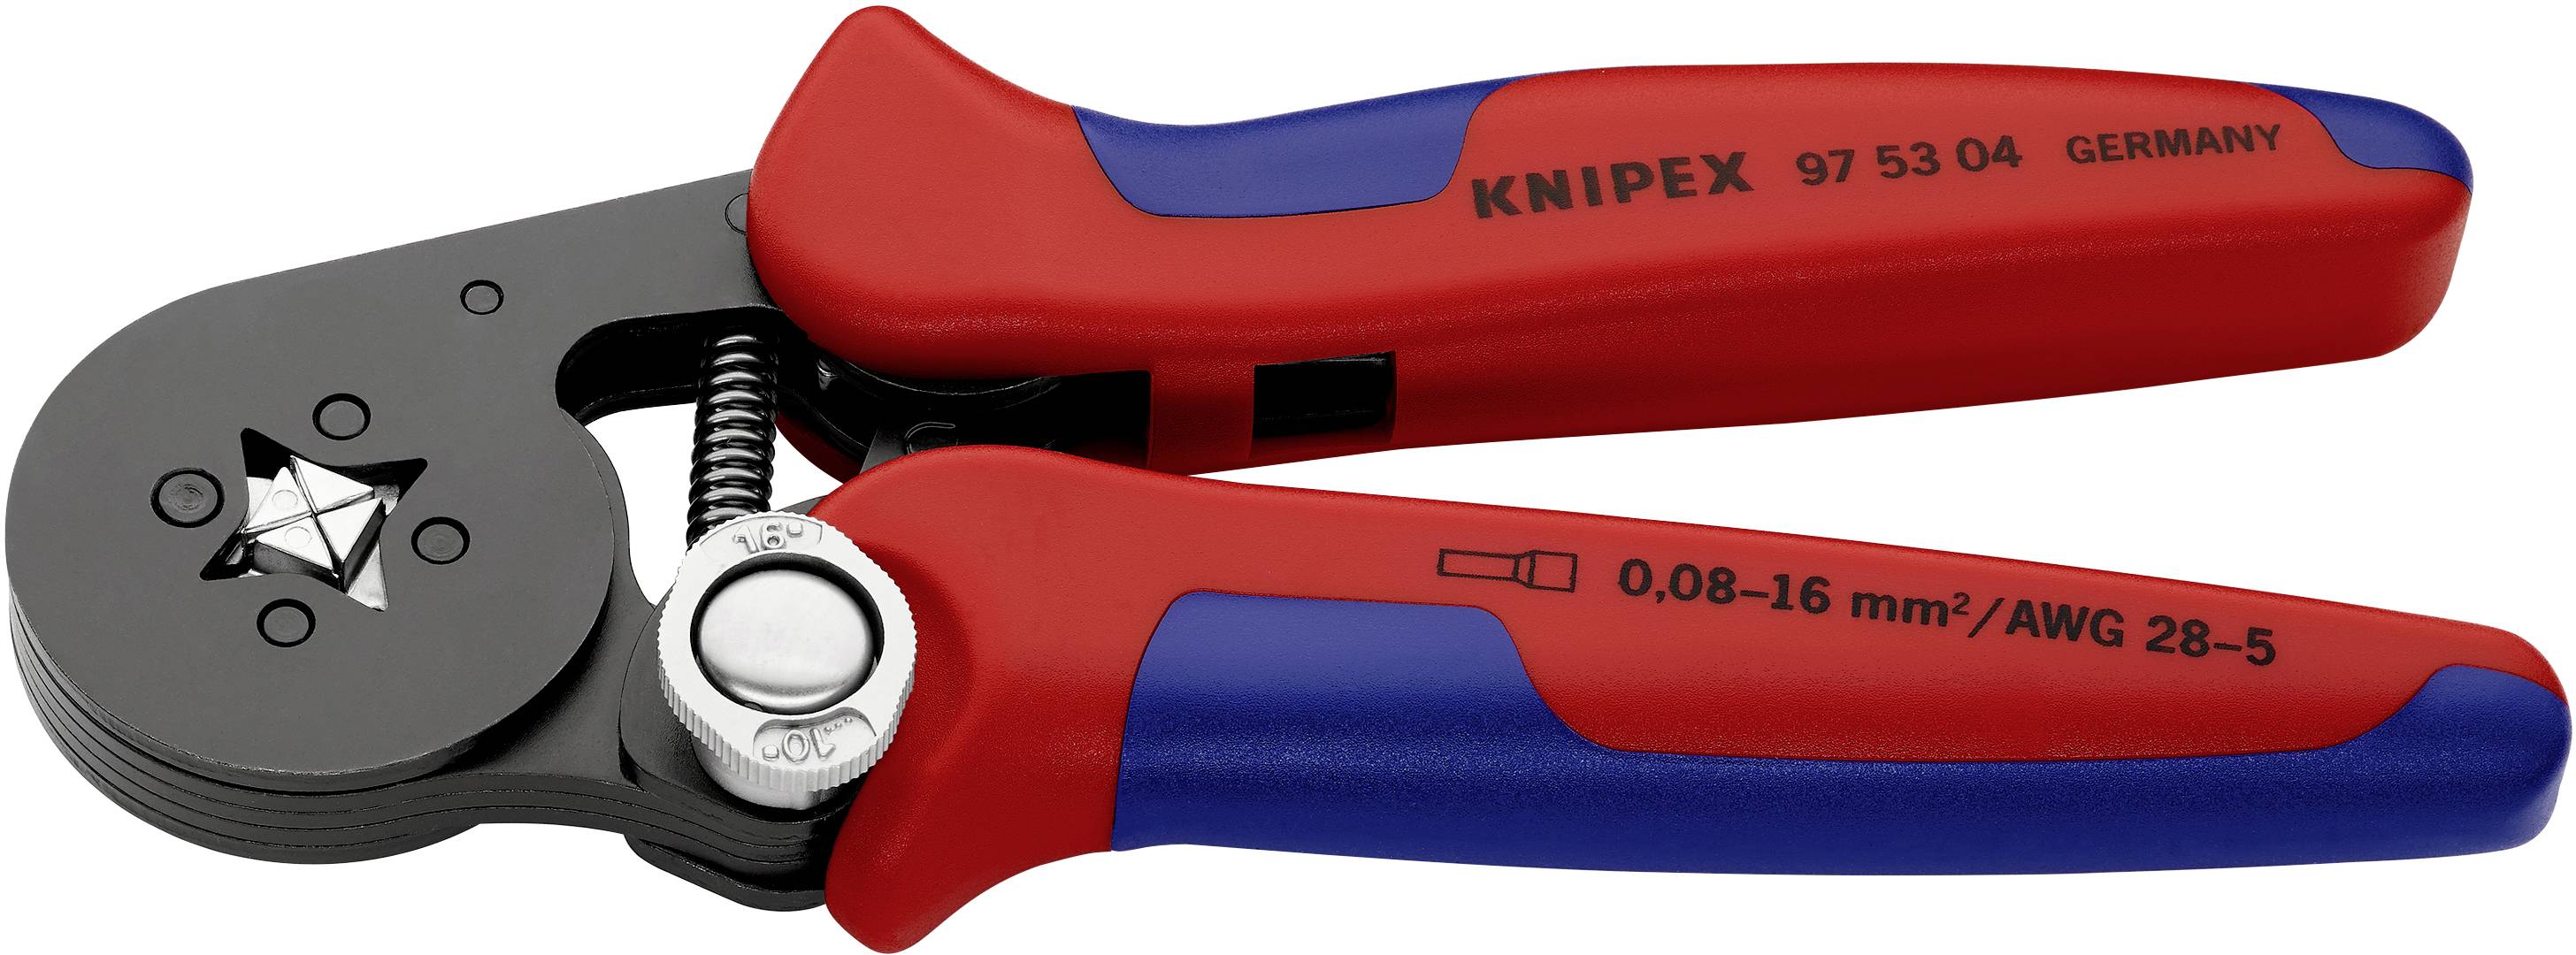 Pince à sertir Knipex Knipex-Werk 97 53 04 pour embouts de câble 0.08 à 16  mm²